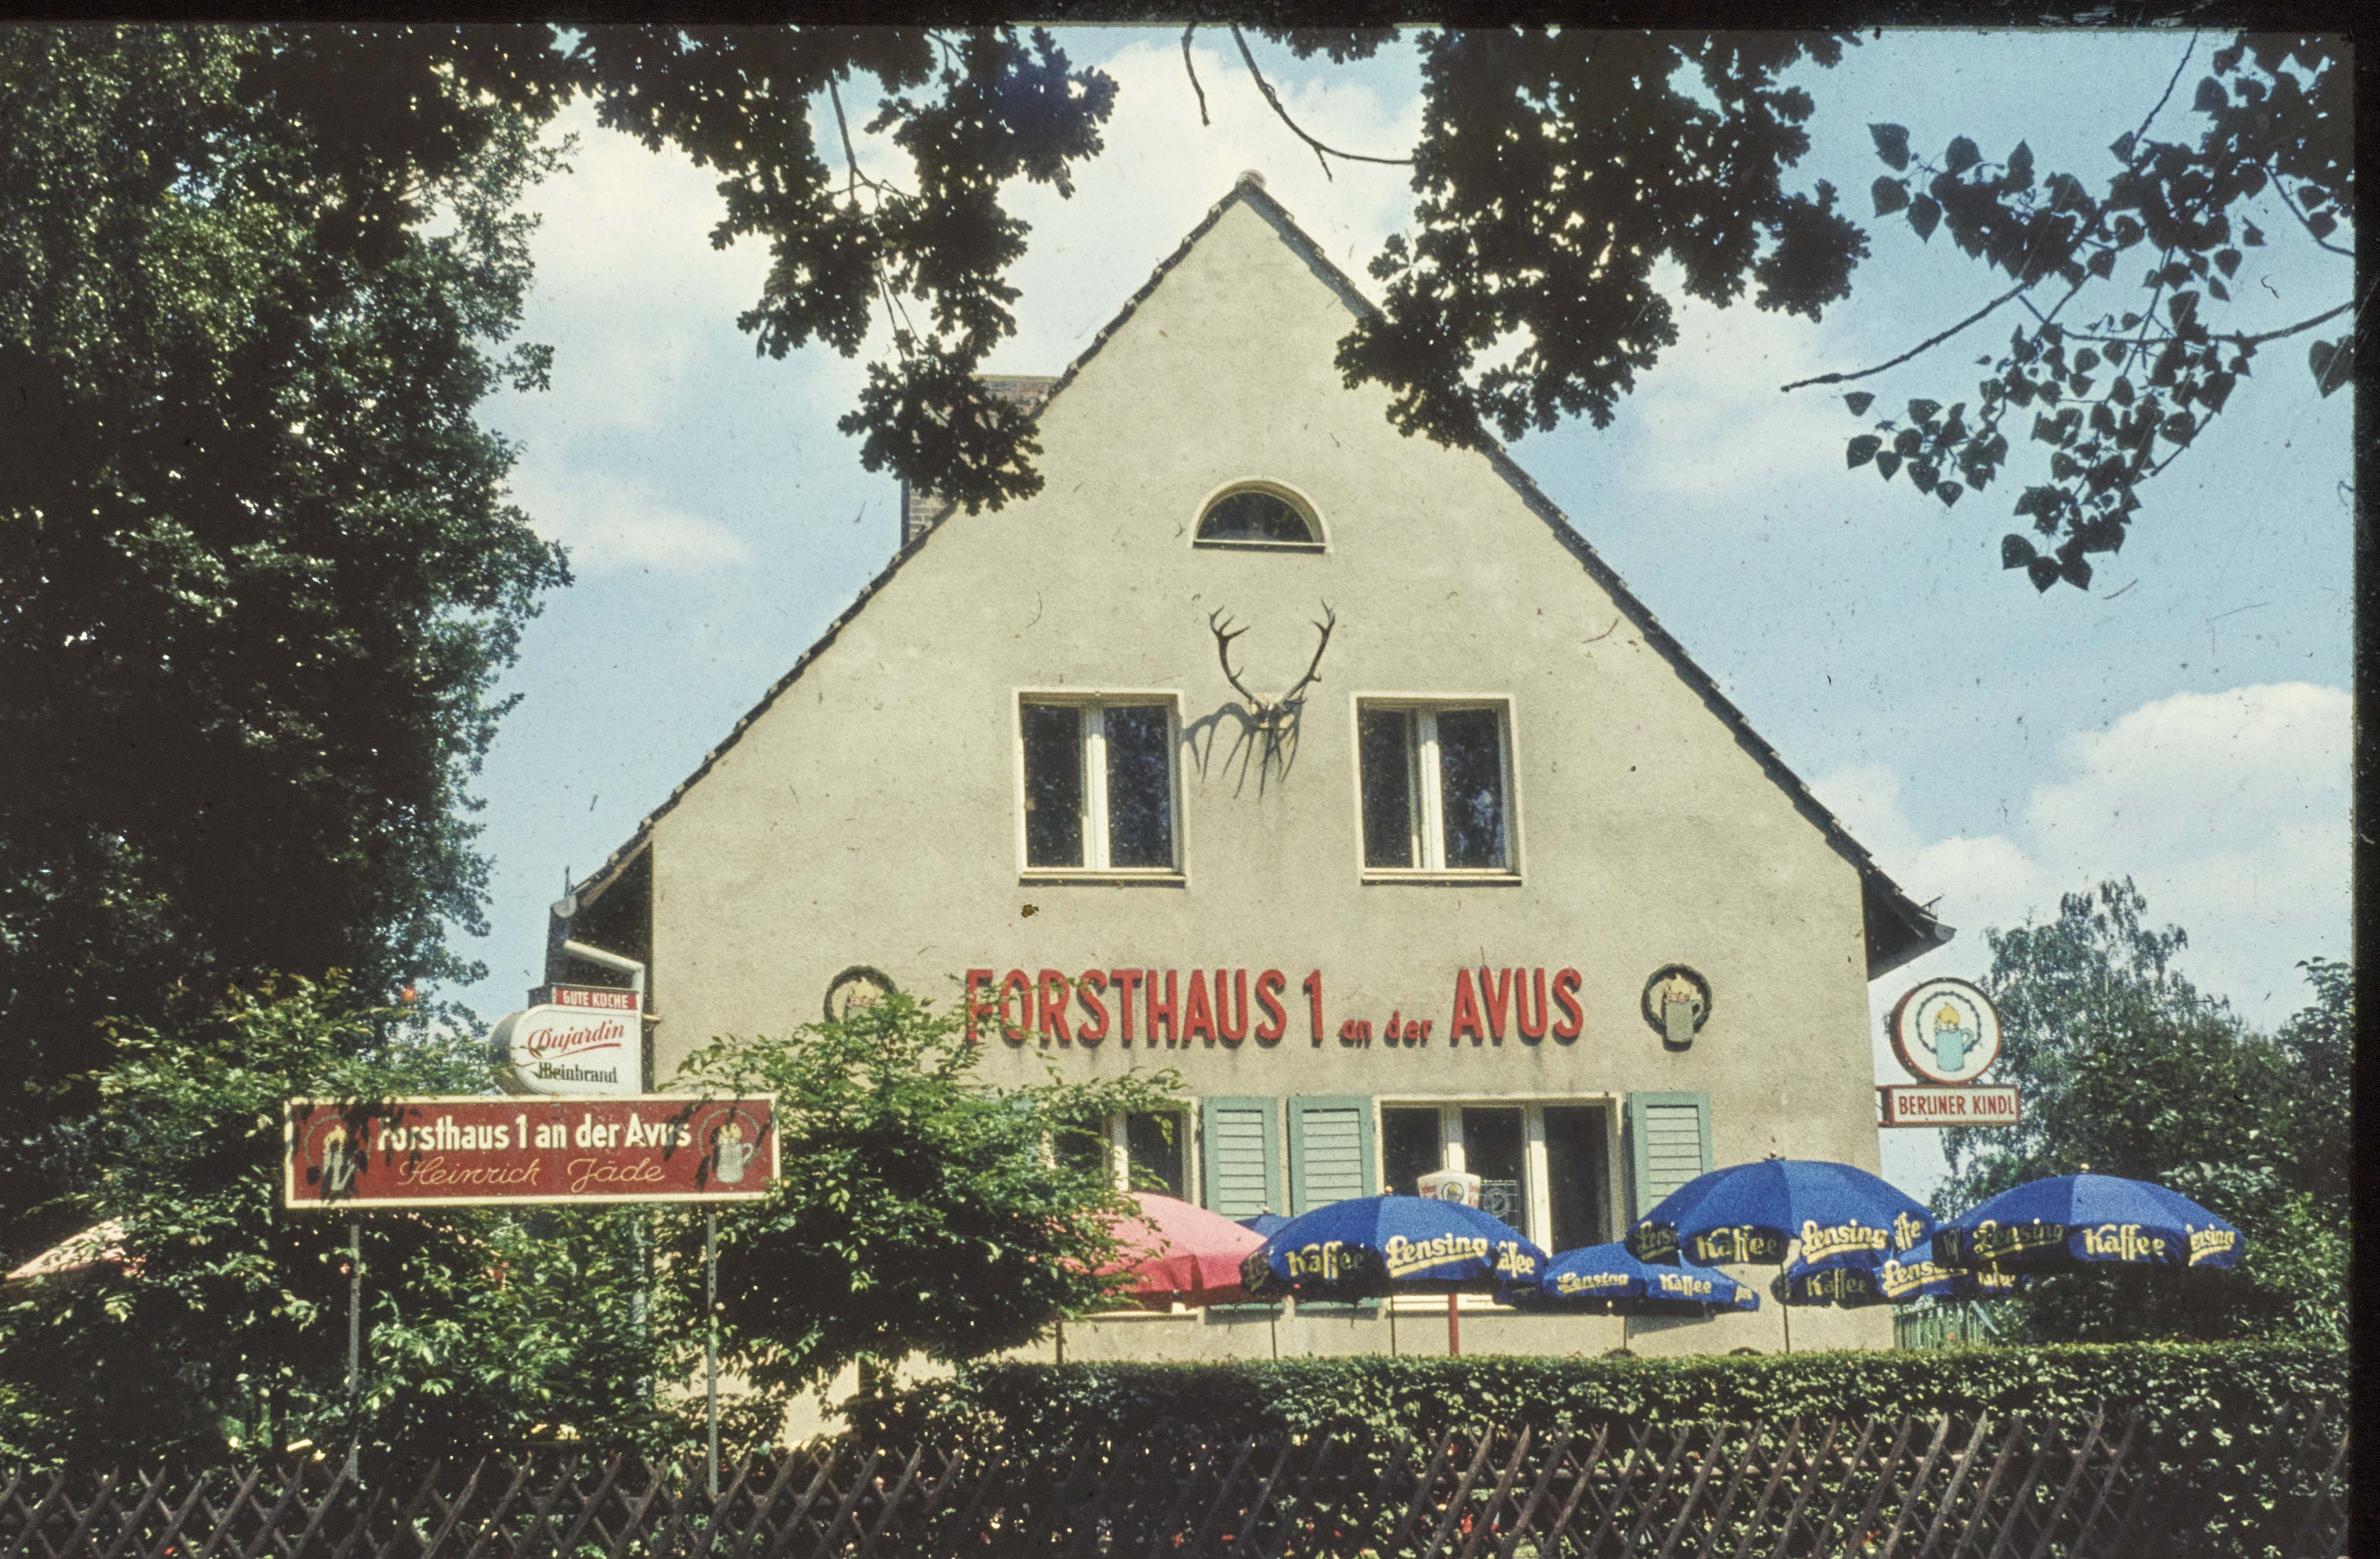 Forsthaus an der Avus (Museum Charlottenburg-Wilmersdorf in der Villa Oppenheim CC BY)